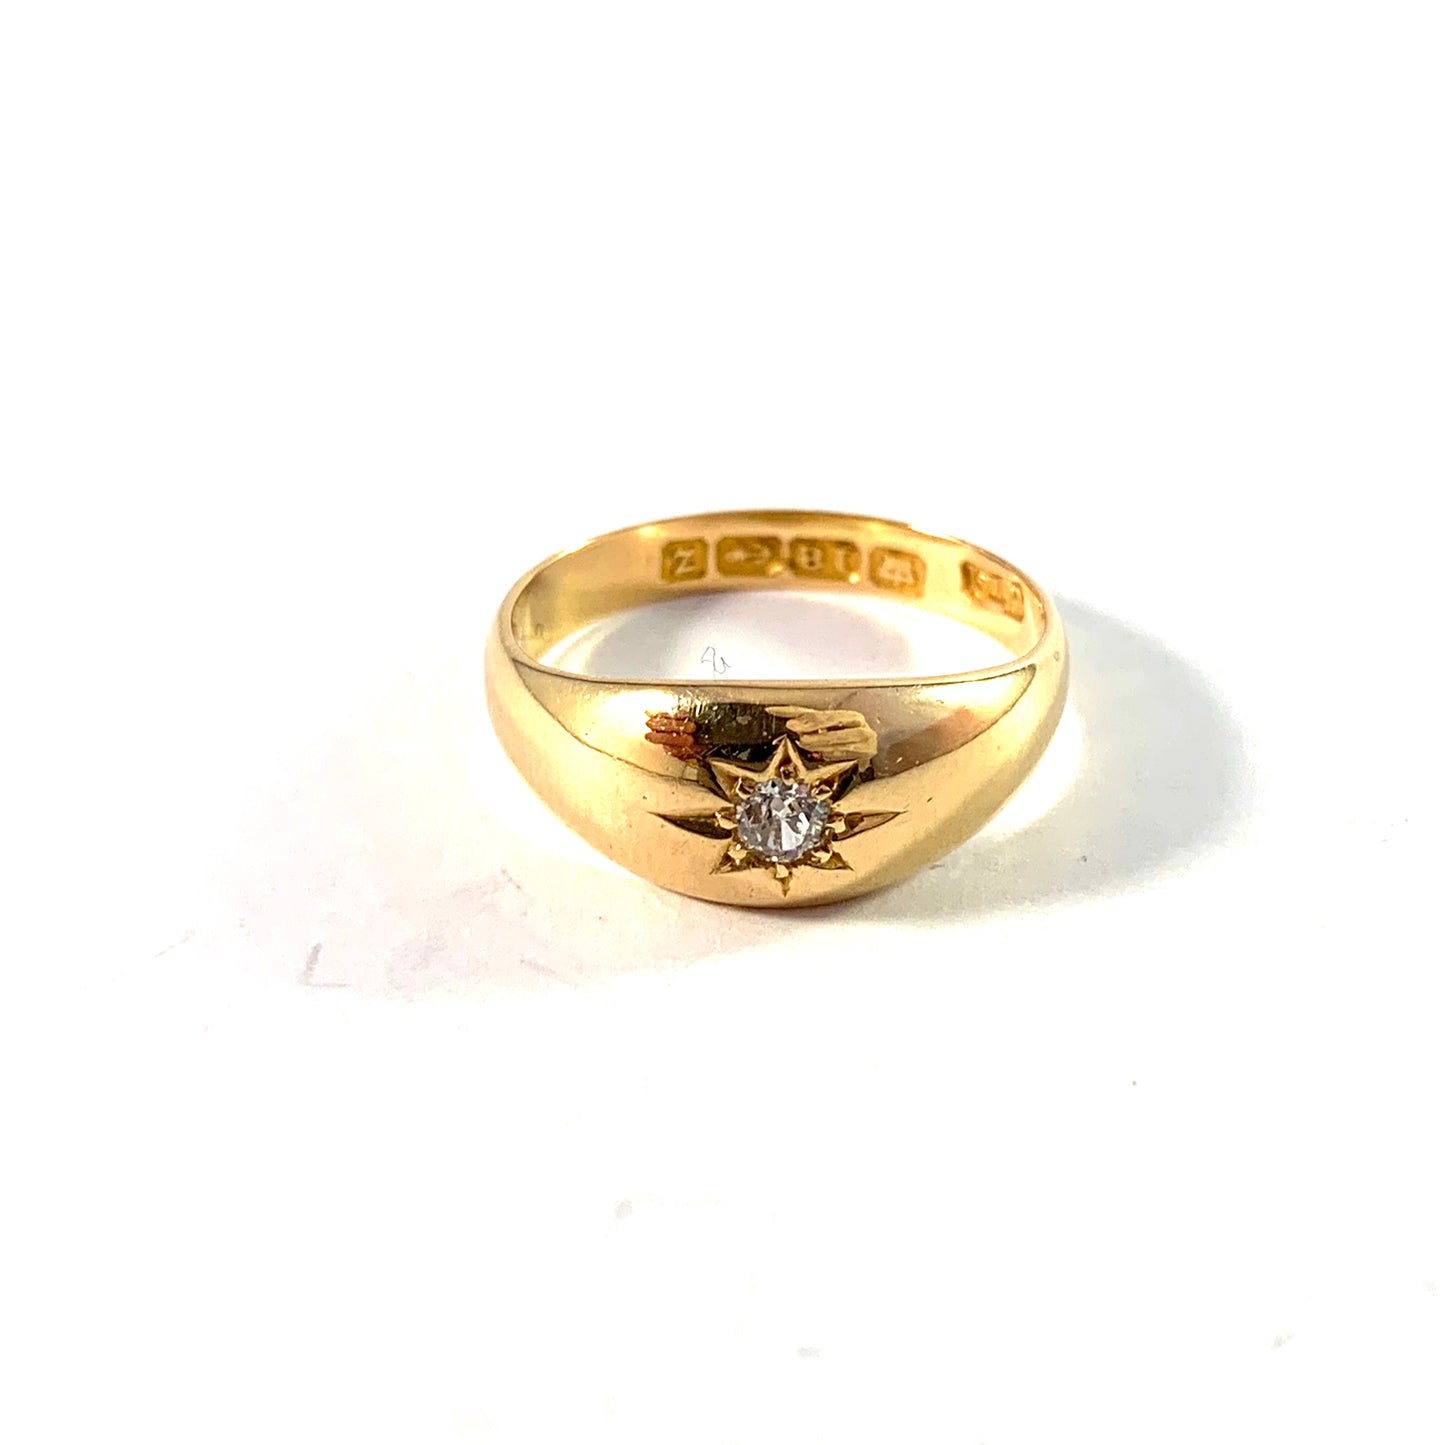 EJ Clewley & Co, Birmingham 1899. Victorian 18k Gold Diamond Gypsy Ring.